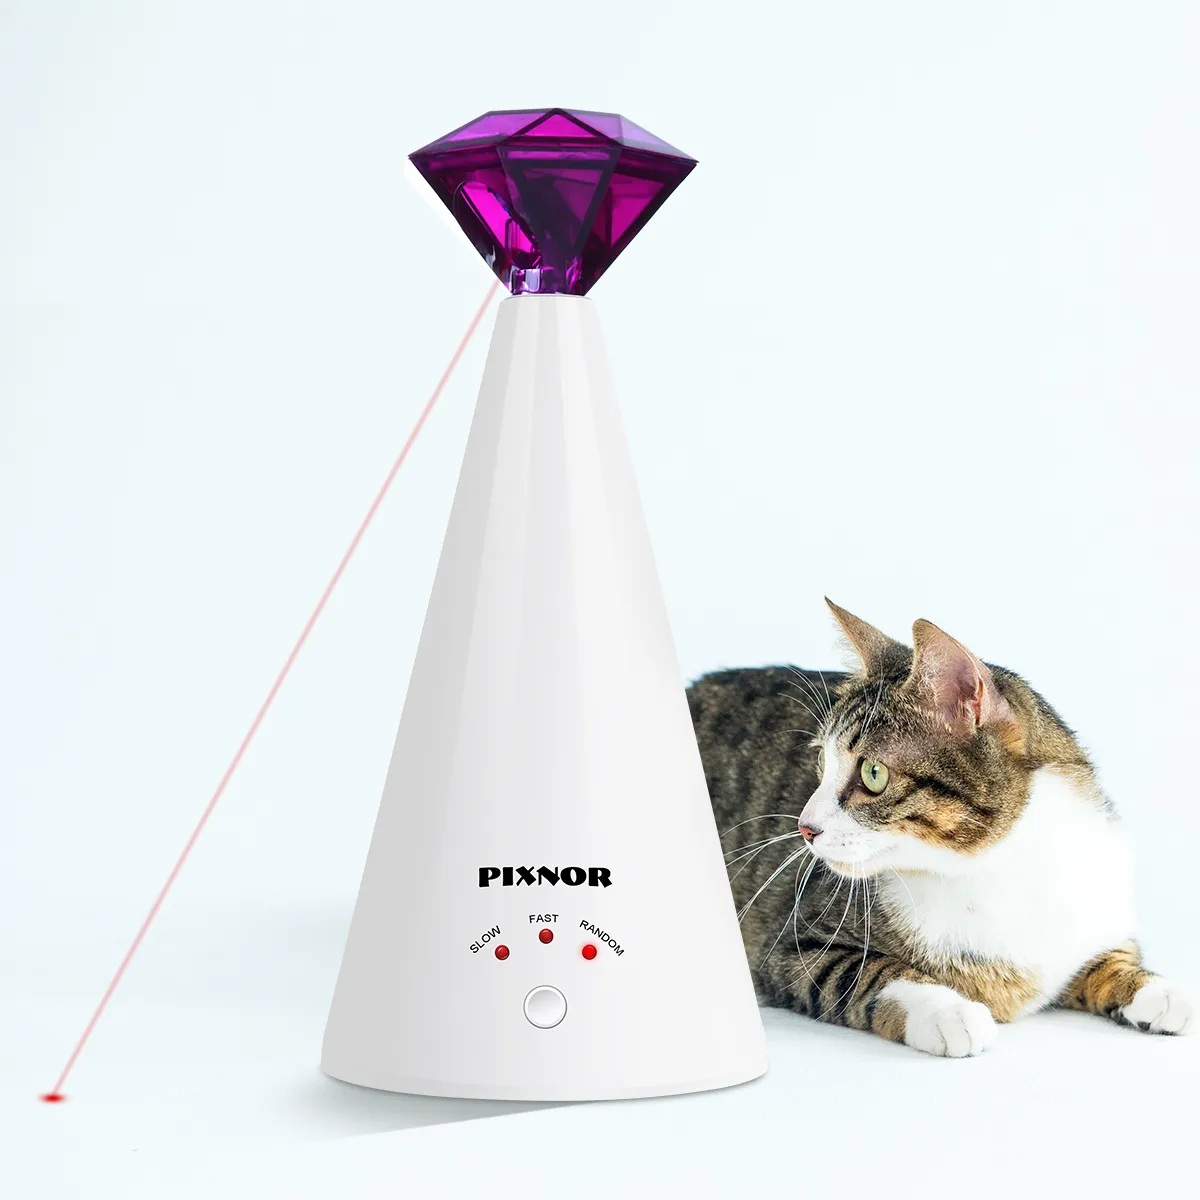 Pixnor Smart Laser Provocando dispositivo de brinquedo elétrico Home Home Interactive Ajustável 3 velocidades Ponteiro PET Purple 2011126216189